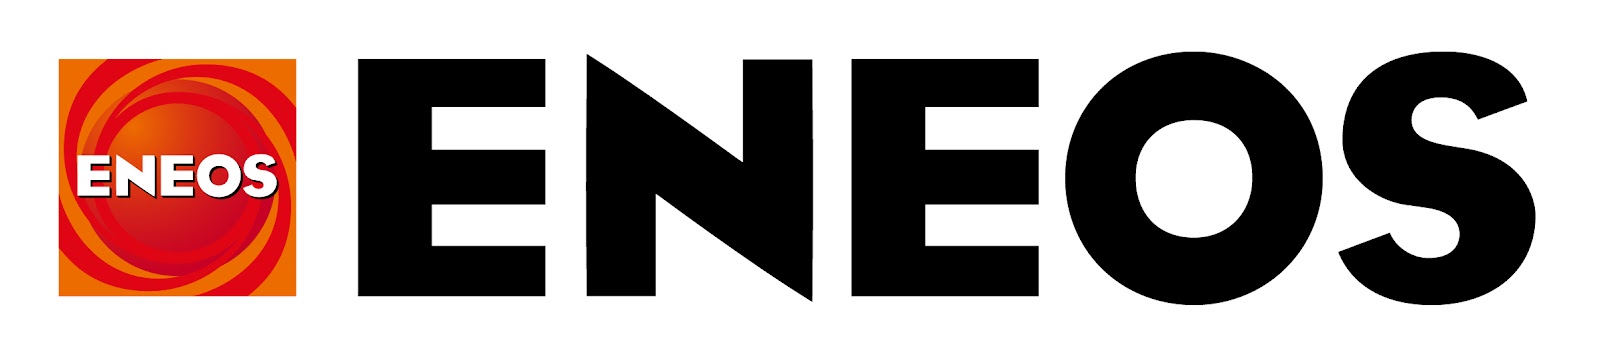 ENEOS Corporation